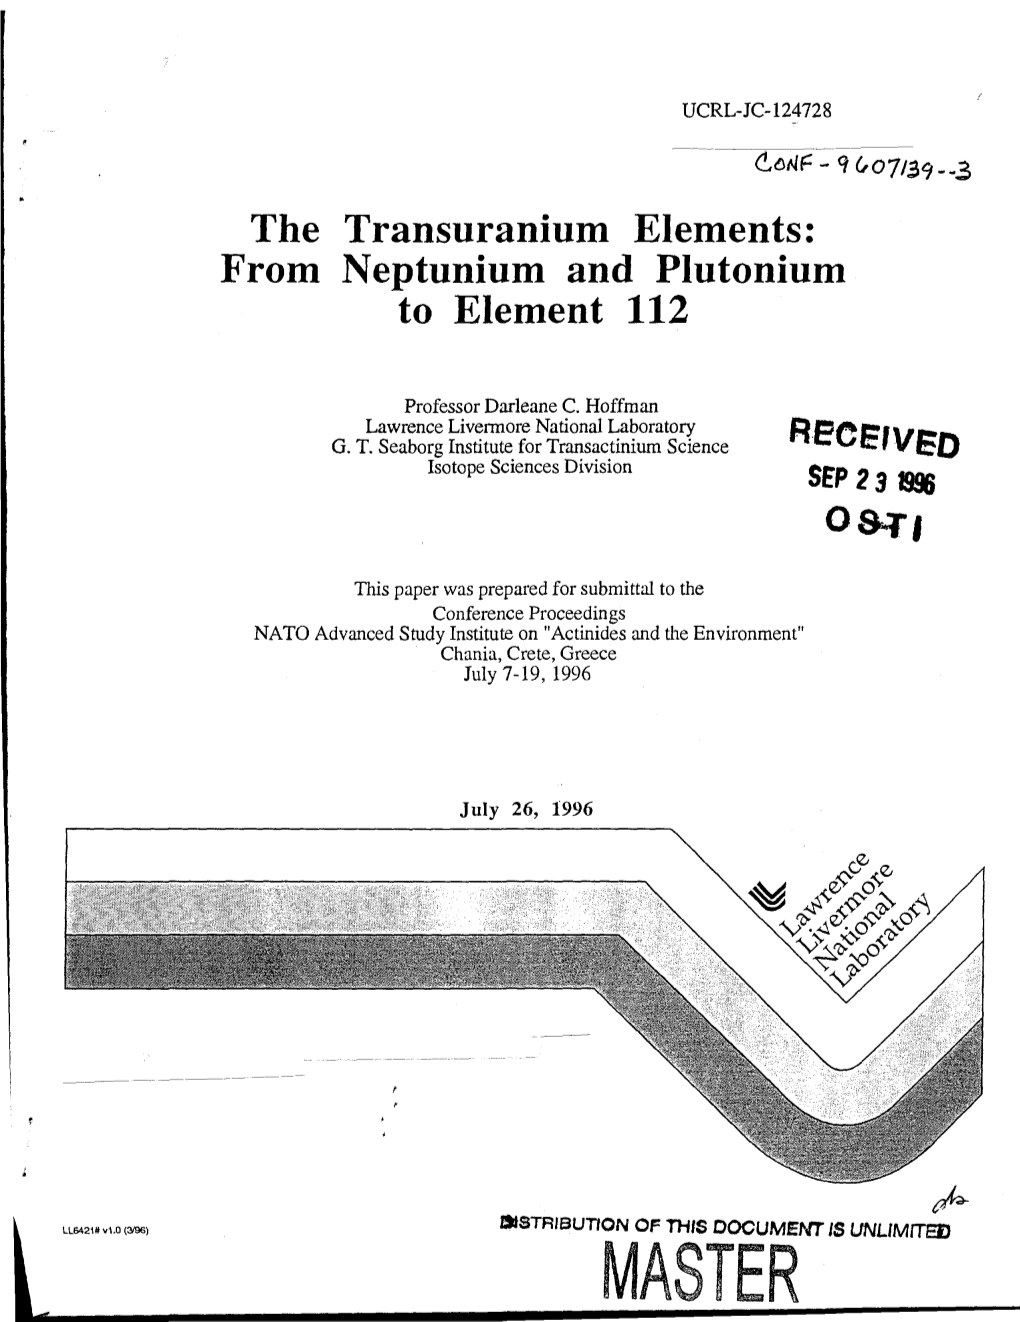 The Transuranium Elements: from Neptunium and Plutonium to Element 112